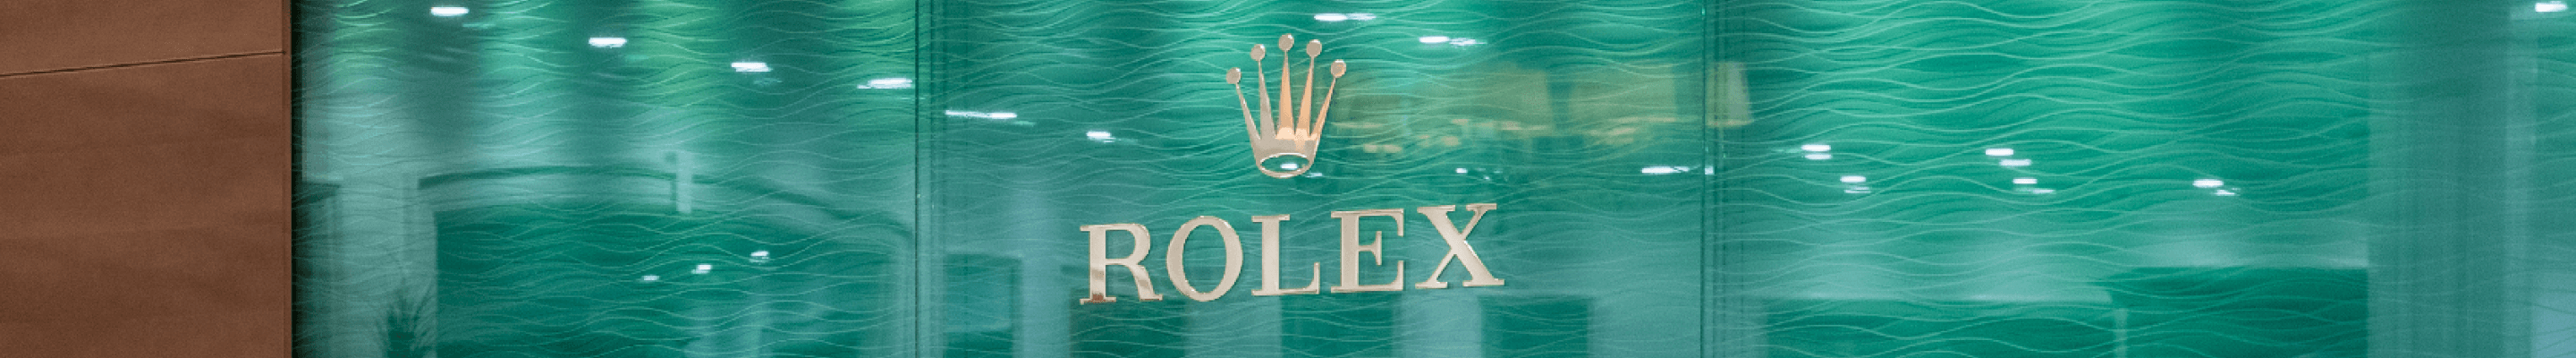 Aucoin Hart Rolex Showroom in Louisiana